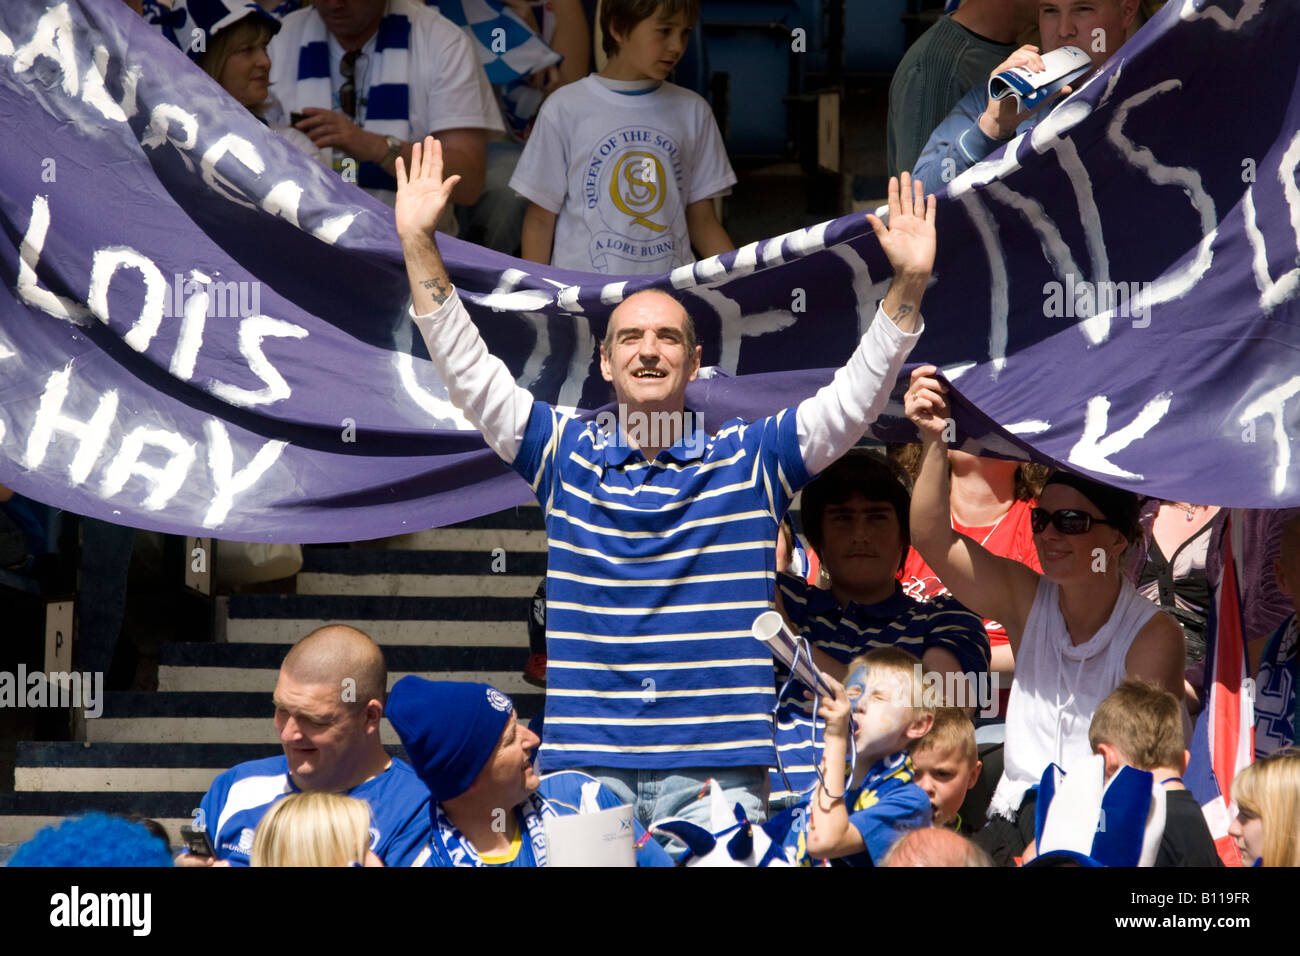 Fußball-Fan Amoungest das Publikum stehend sein Team anfeuern, im schottischen Pokalfinale Hampden Park Scotland UK Stockfoto